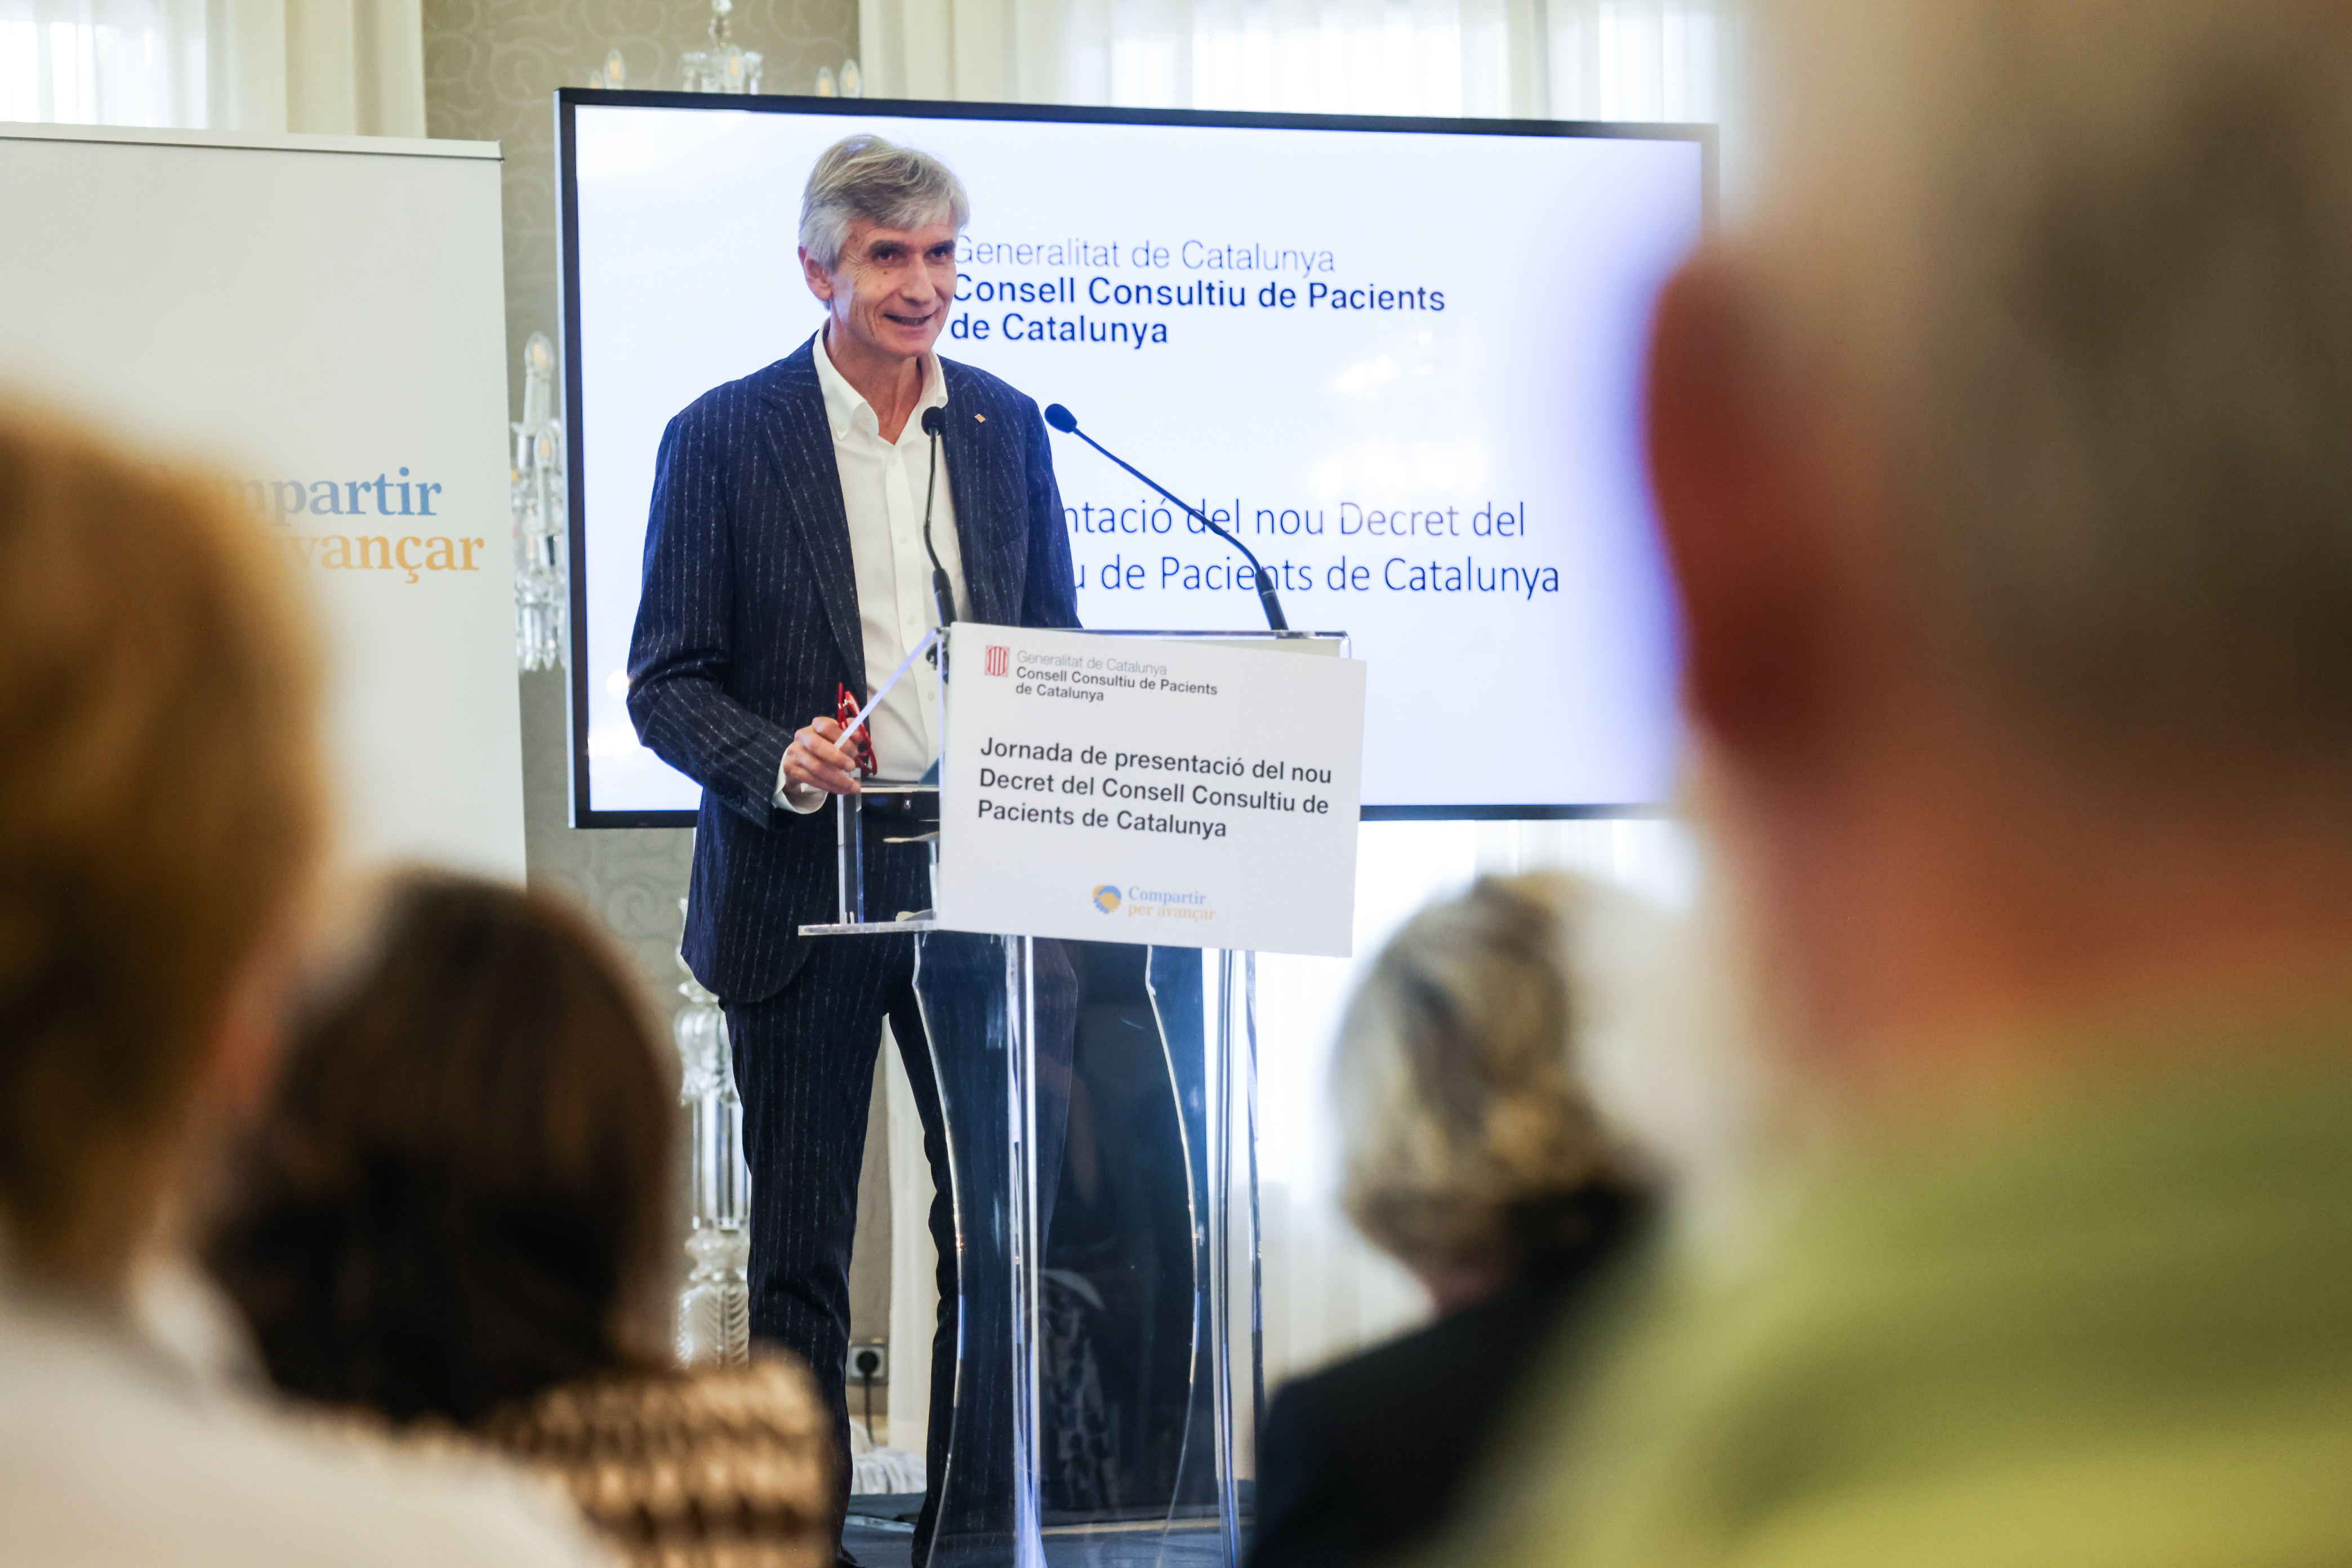 El conseller Argimon durant la presentació del nou Decret del Consell Consultiu de Pacients de Catalunya